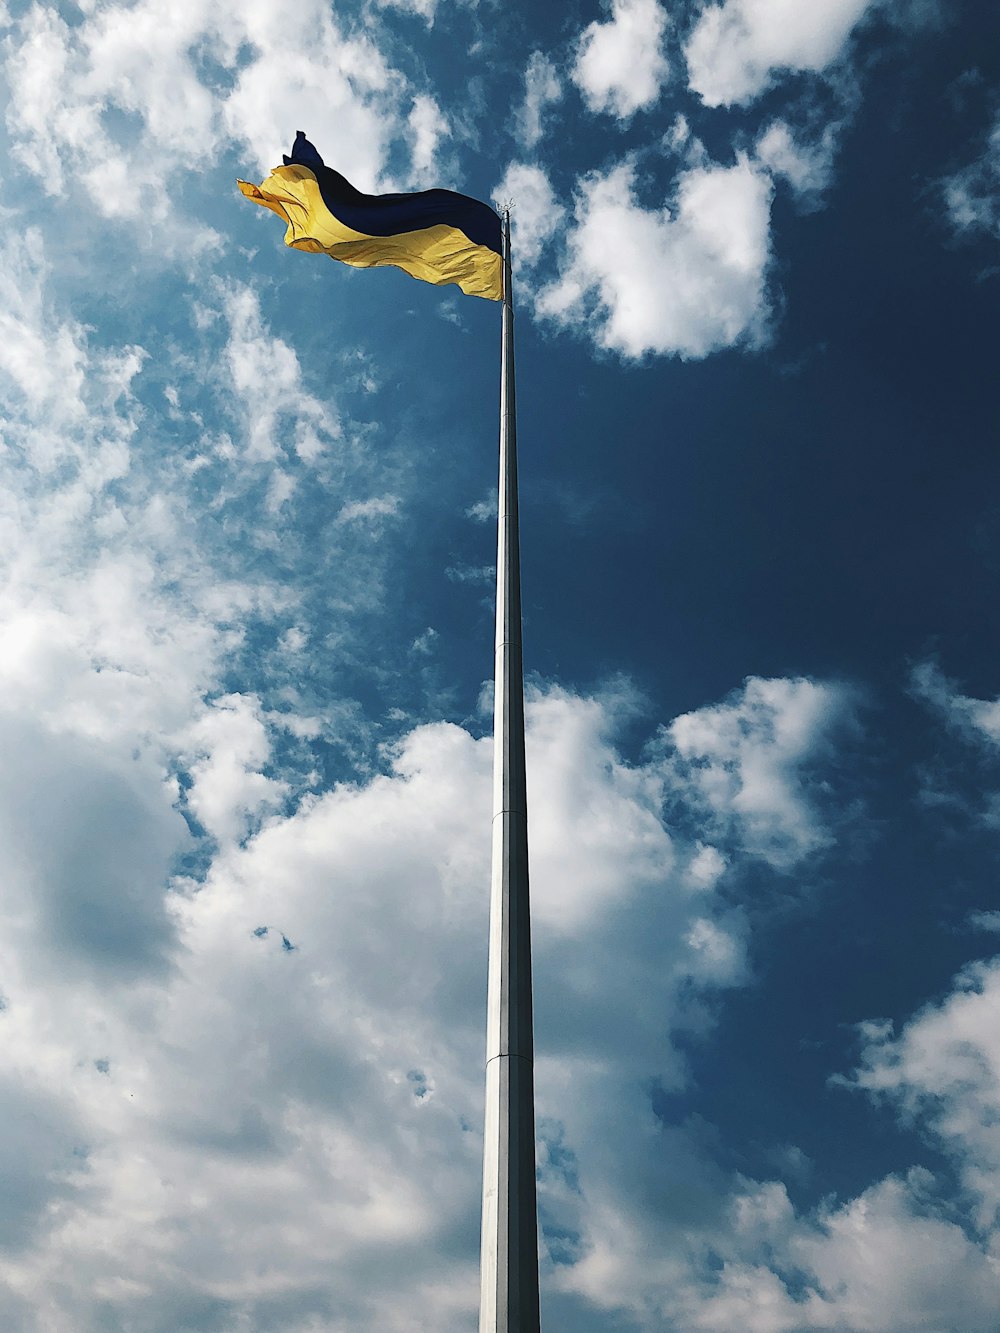 昼間の白い雲と青い空の下に黄色い旗